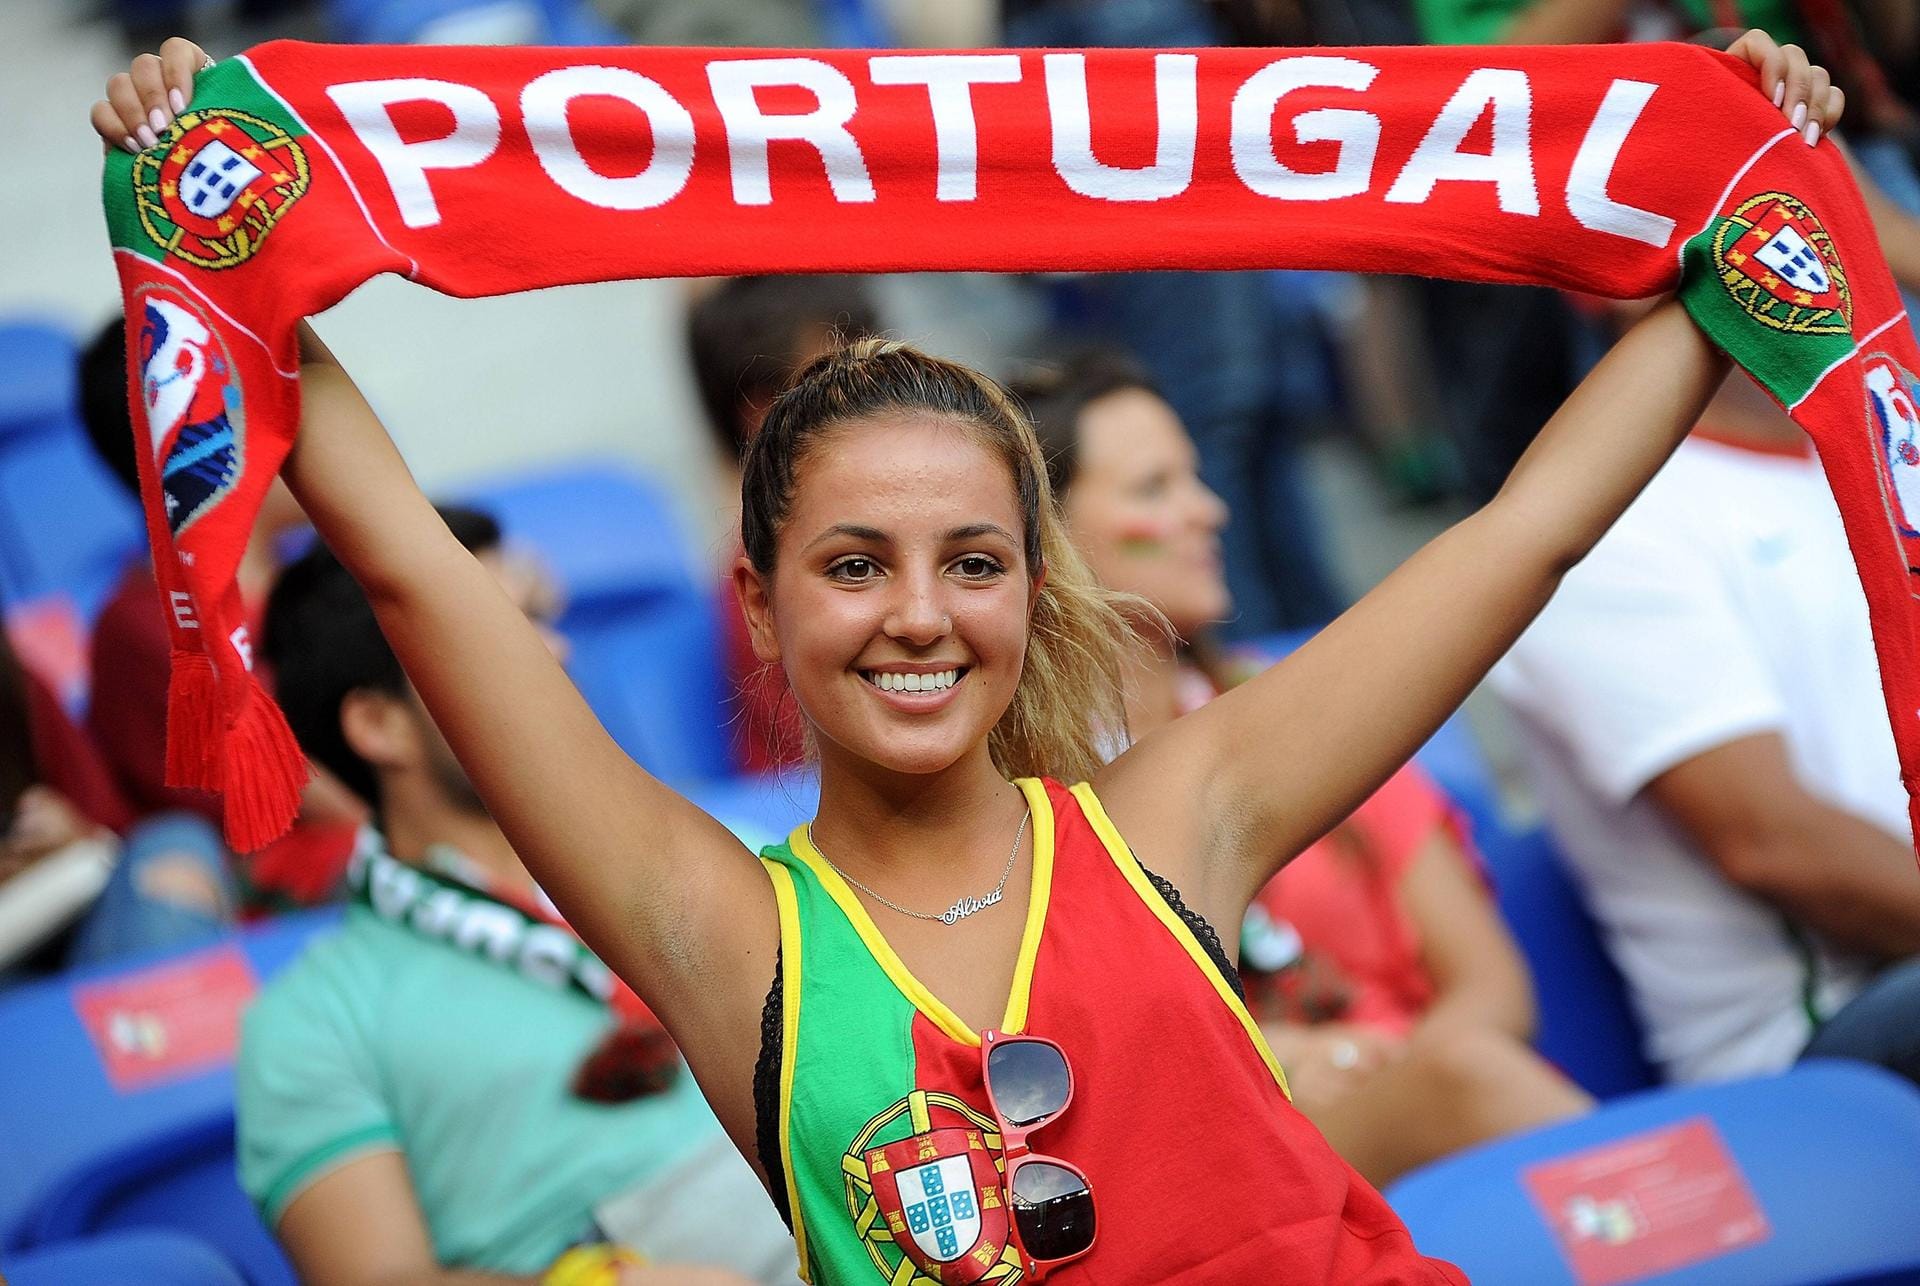 Da lacht das Herz: Klar, für wen das Herz dieser Portugiesin schlägt.